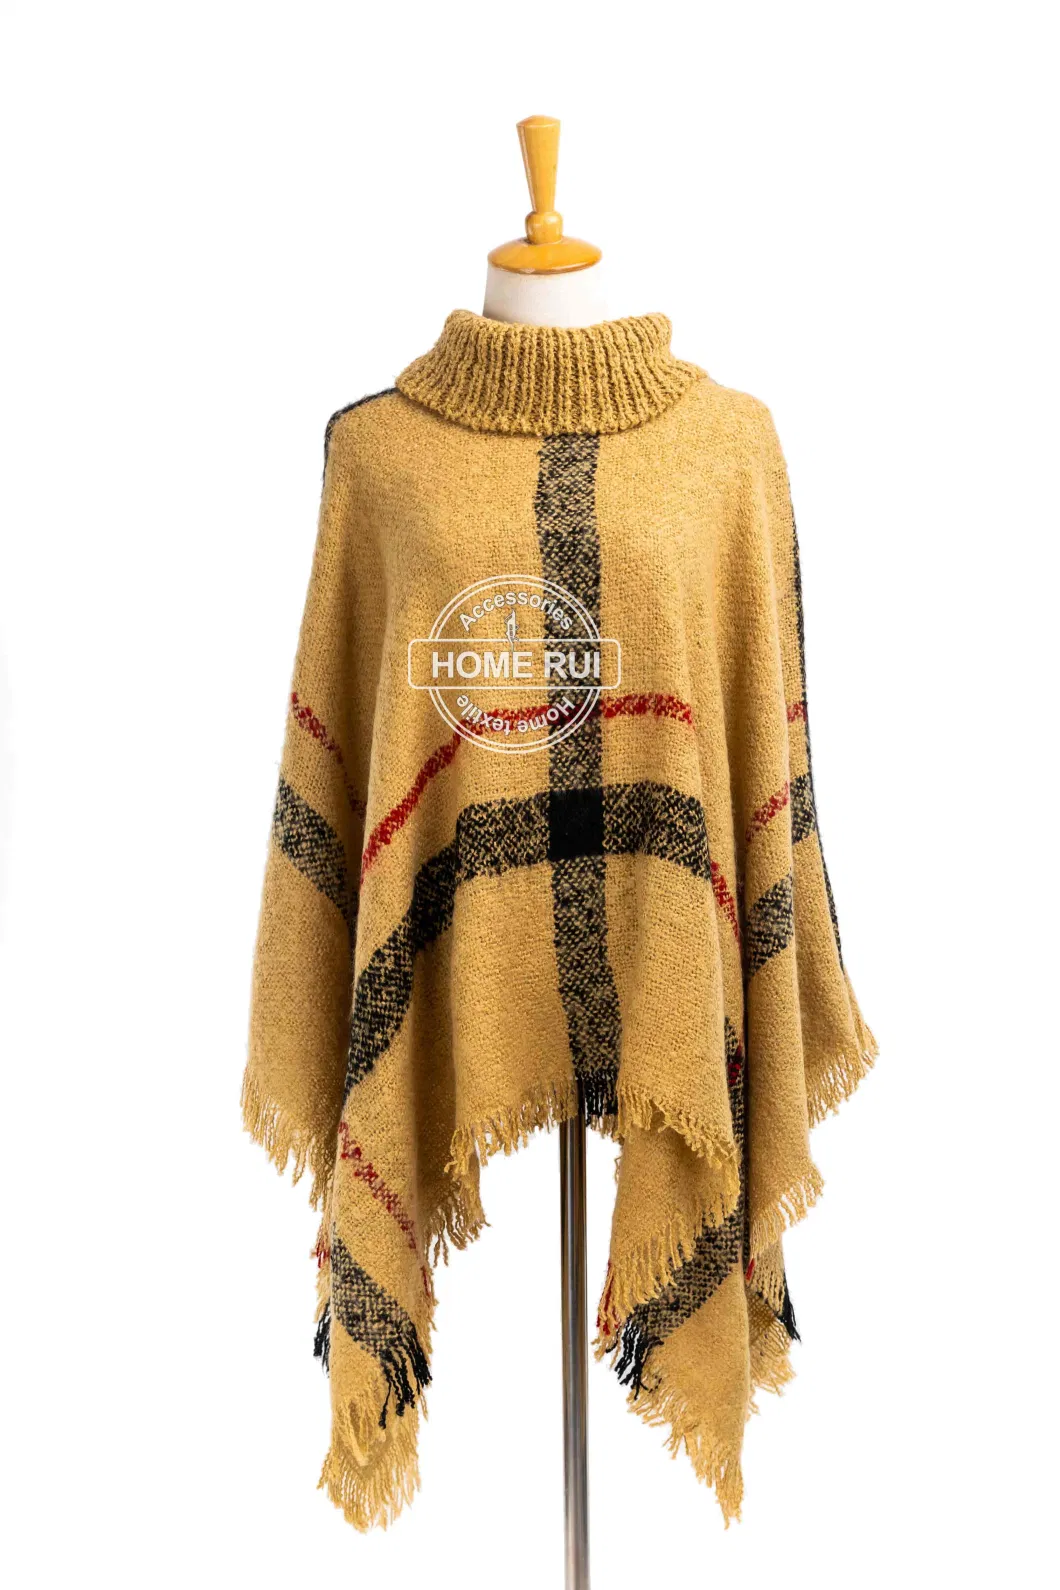 Home Rui Manufacturer Outerwear Autumn Woman Camel Apparel Accessory Boucle Fringe Oversize Pullover Lattice Tartan Grids Turtleneck Shawl Cloak Cape